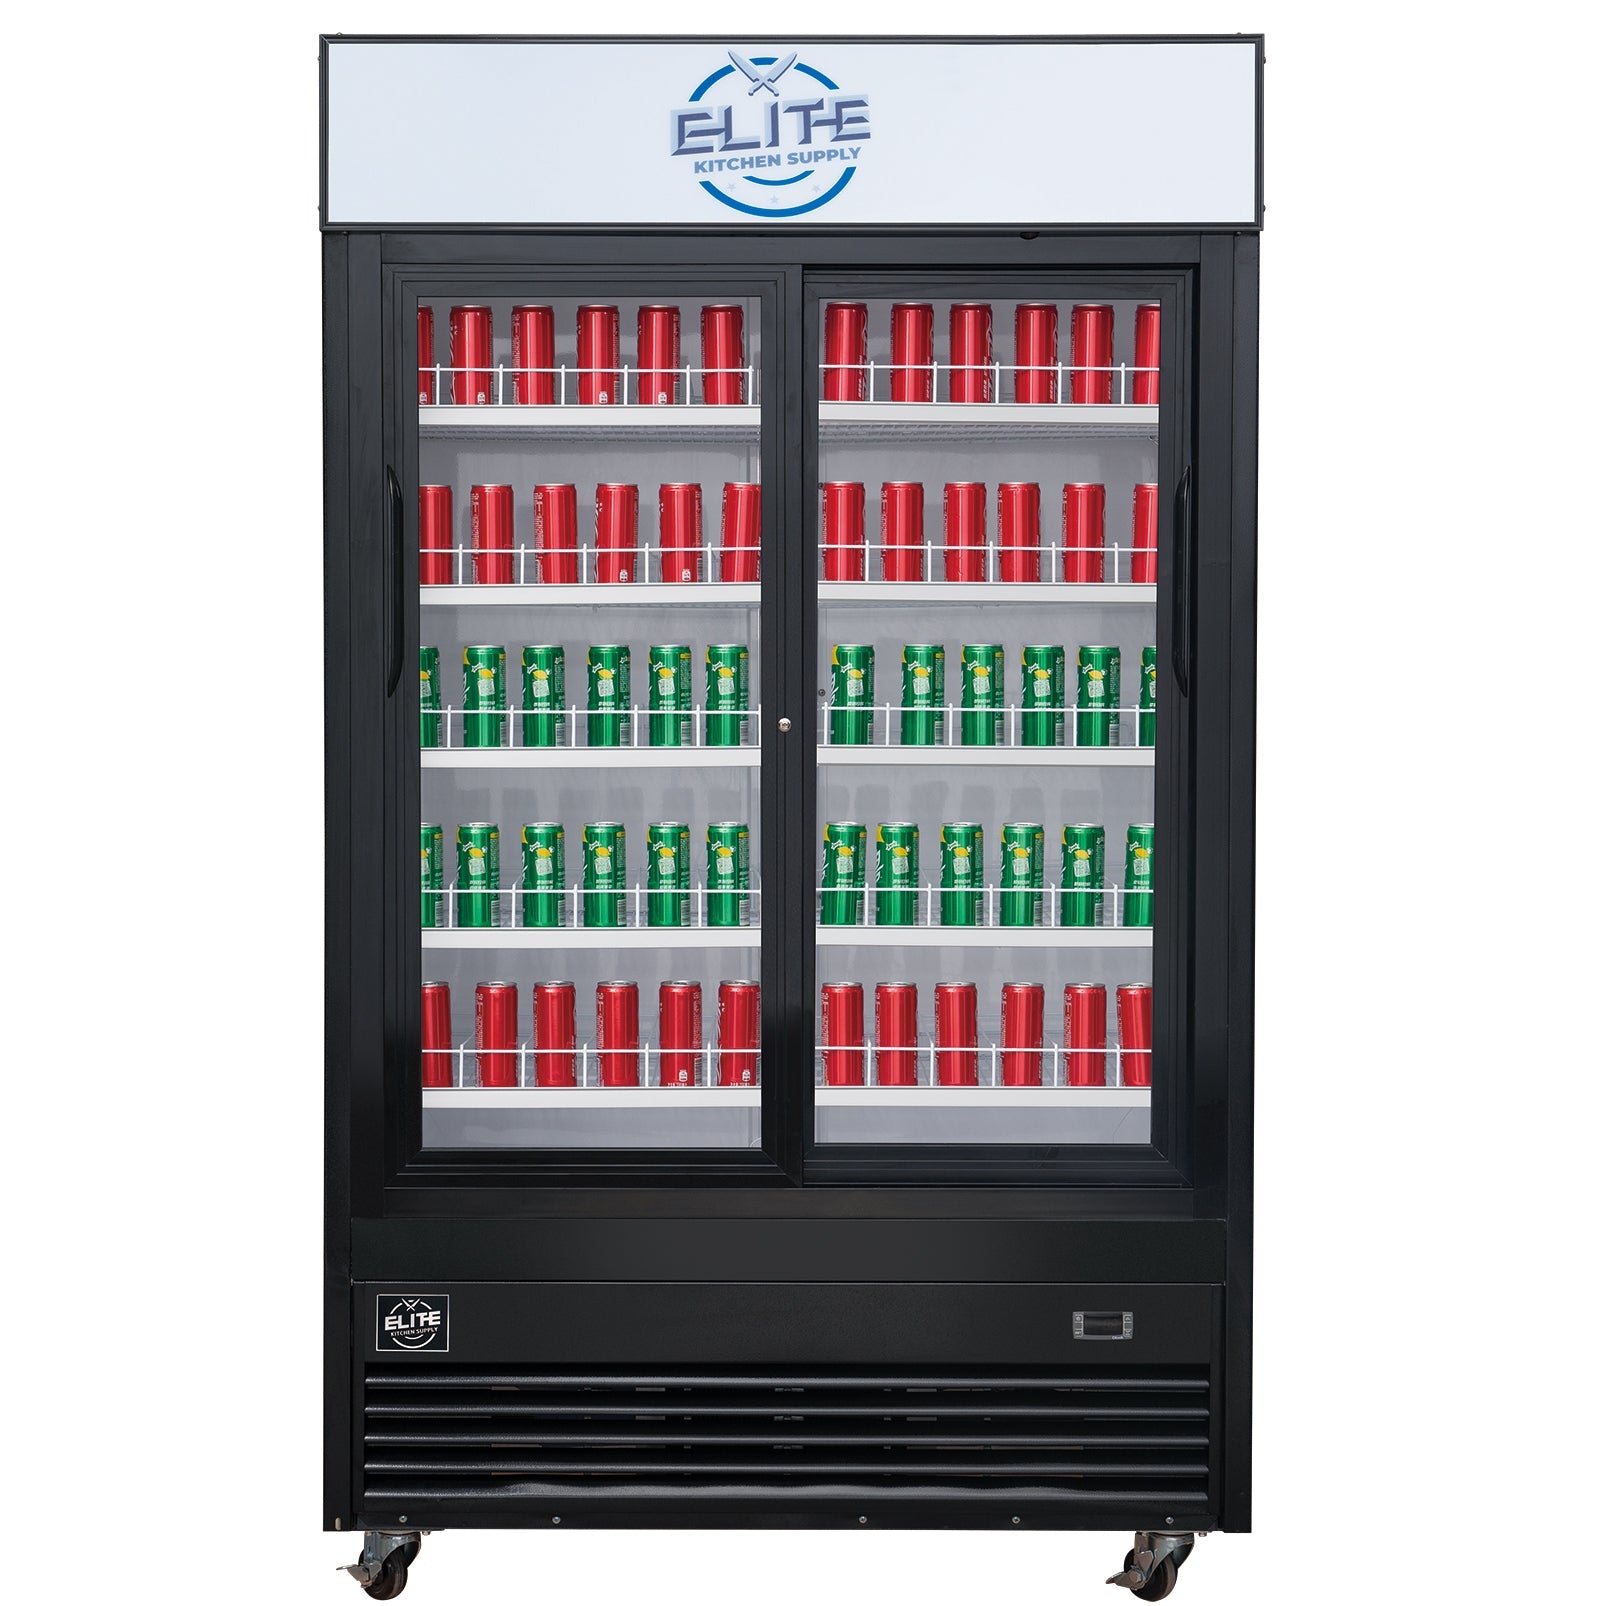 40" 2 Glass Door Merchandiser Refrigerator, ESM34